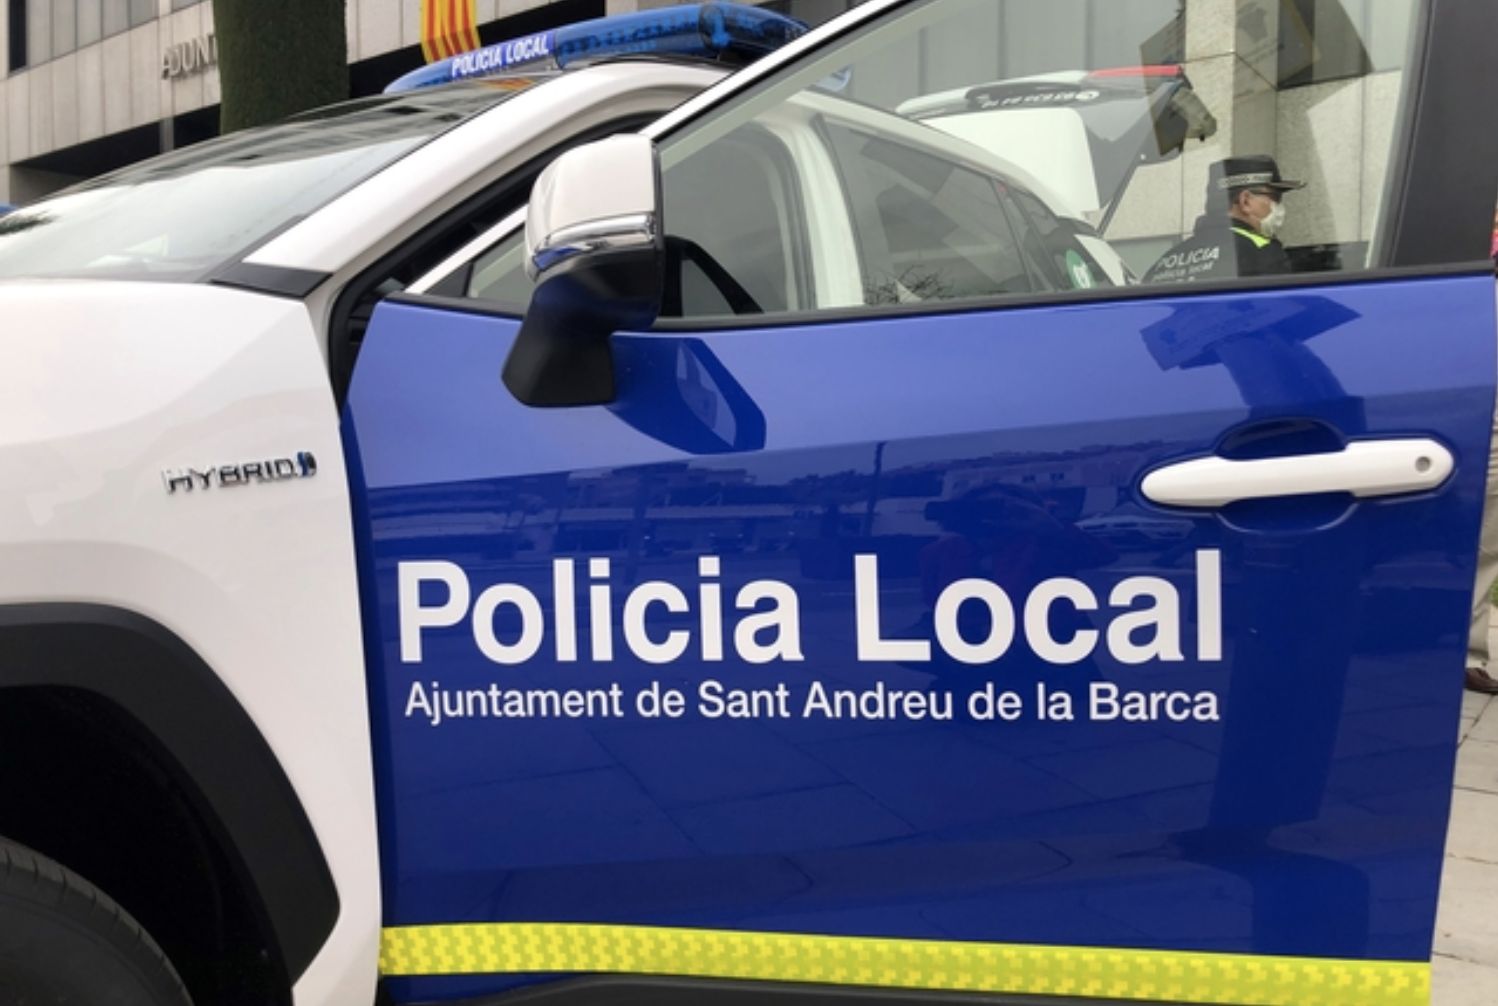 Vehículo de la Policia Local de Sant Andreu de la Barca